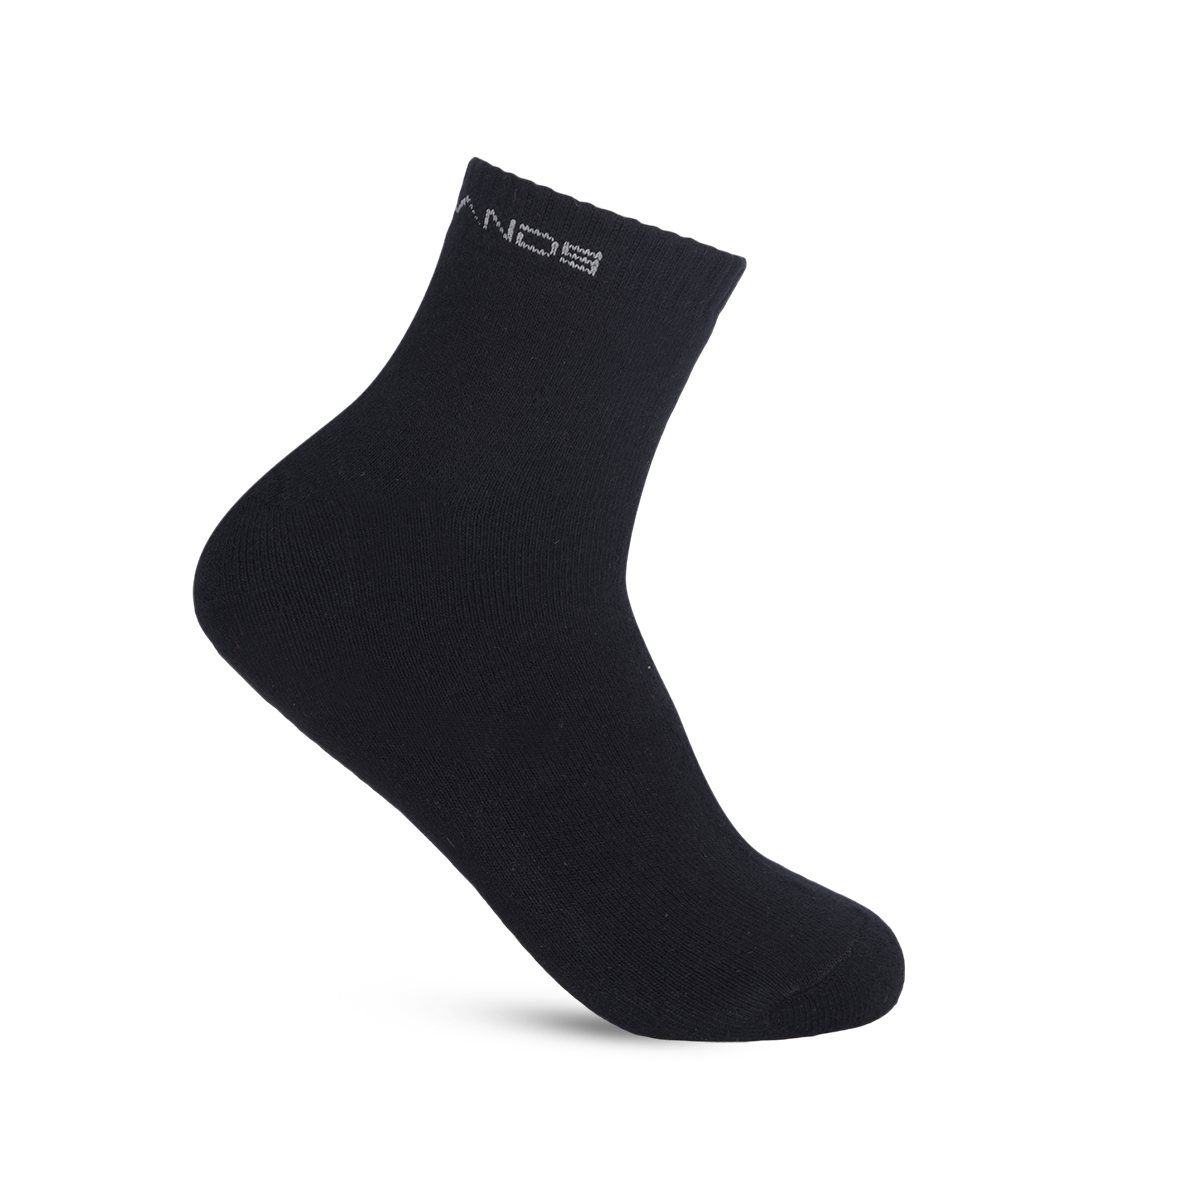 GLOBO White/Gray/Black Ankle Socks (Pack of 3) for Effortless Everyday Chic